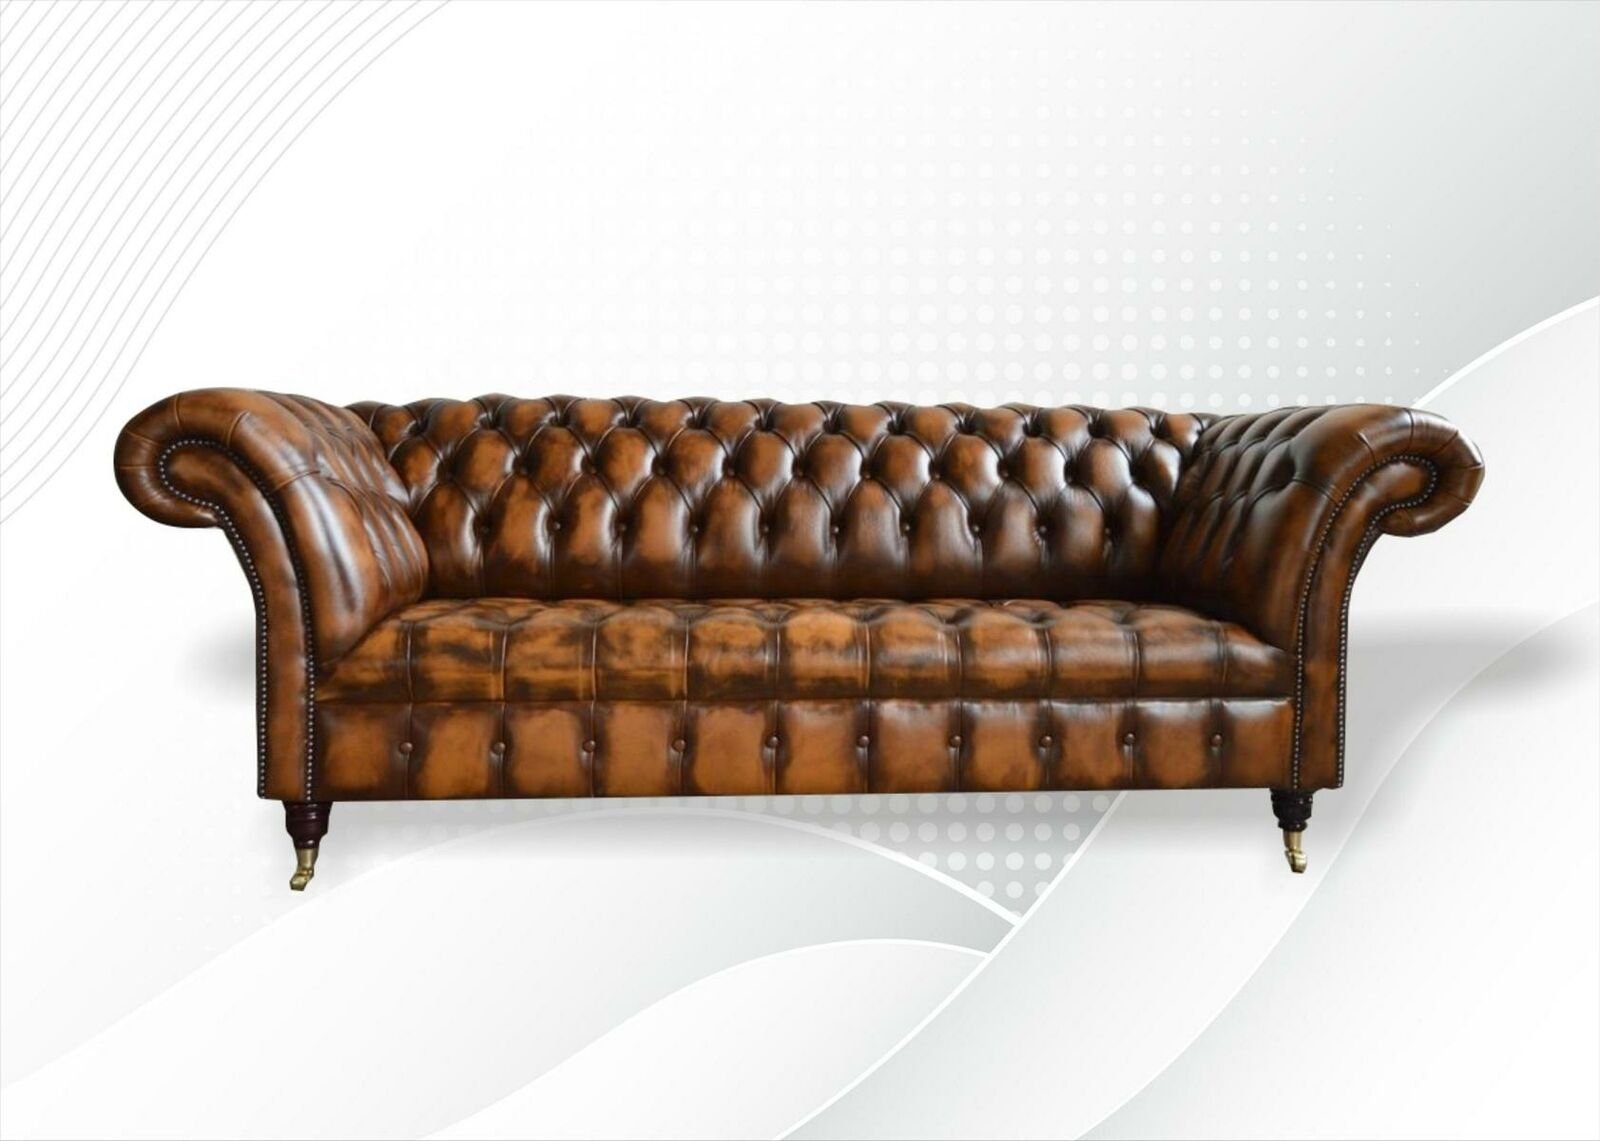 JVmoebel Sofa, Chesterfield Sofa 3 Sitzer Couch Polster Sofas Wohnzimmer Design